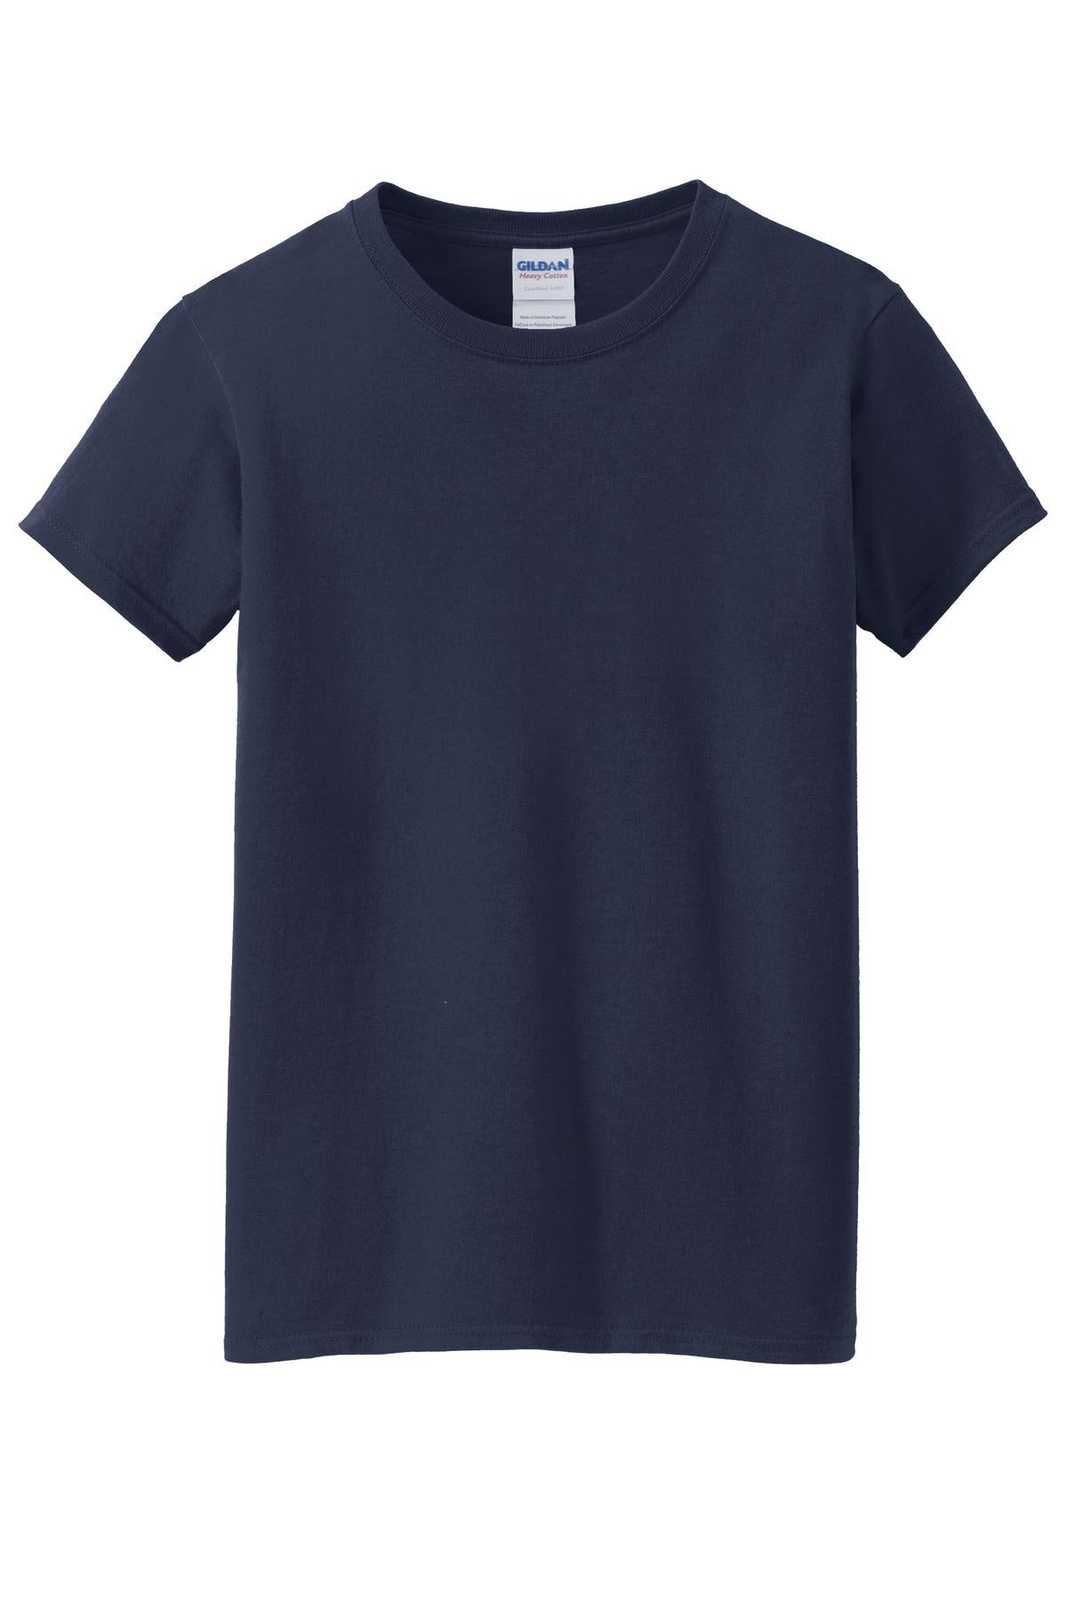 Gildan 5000L Ladies Heavy Cotton 100% Cotton T-Shirt - Navy - HIT a Double